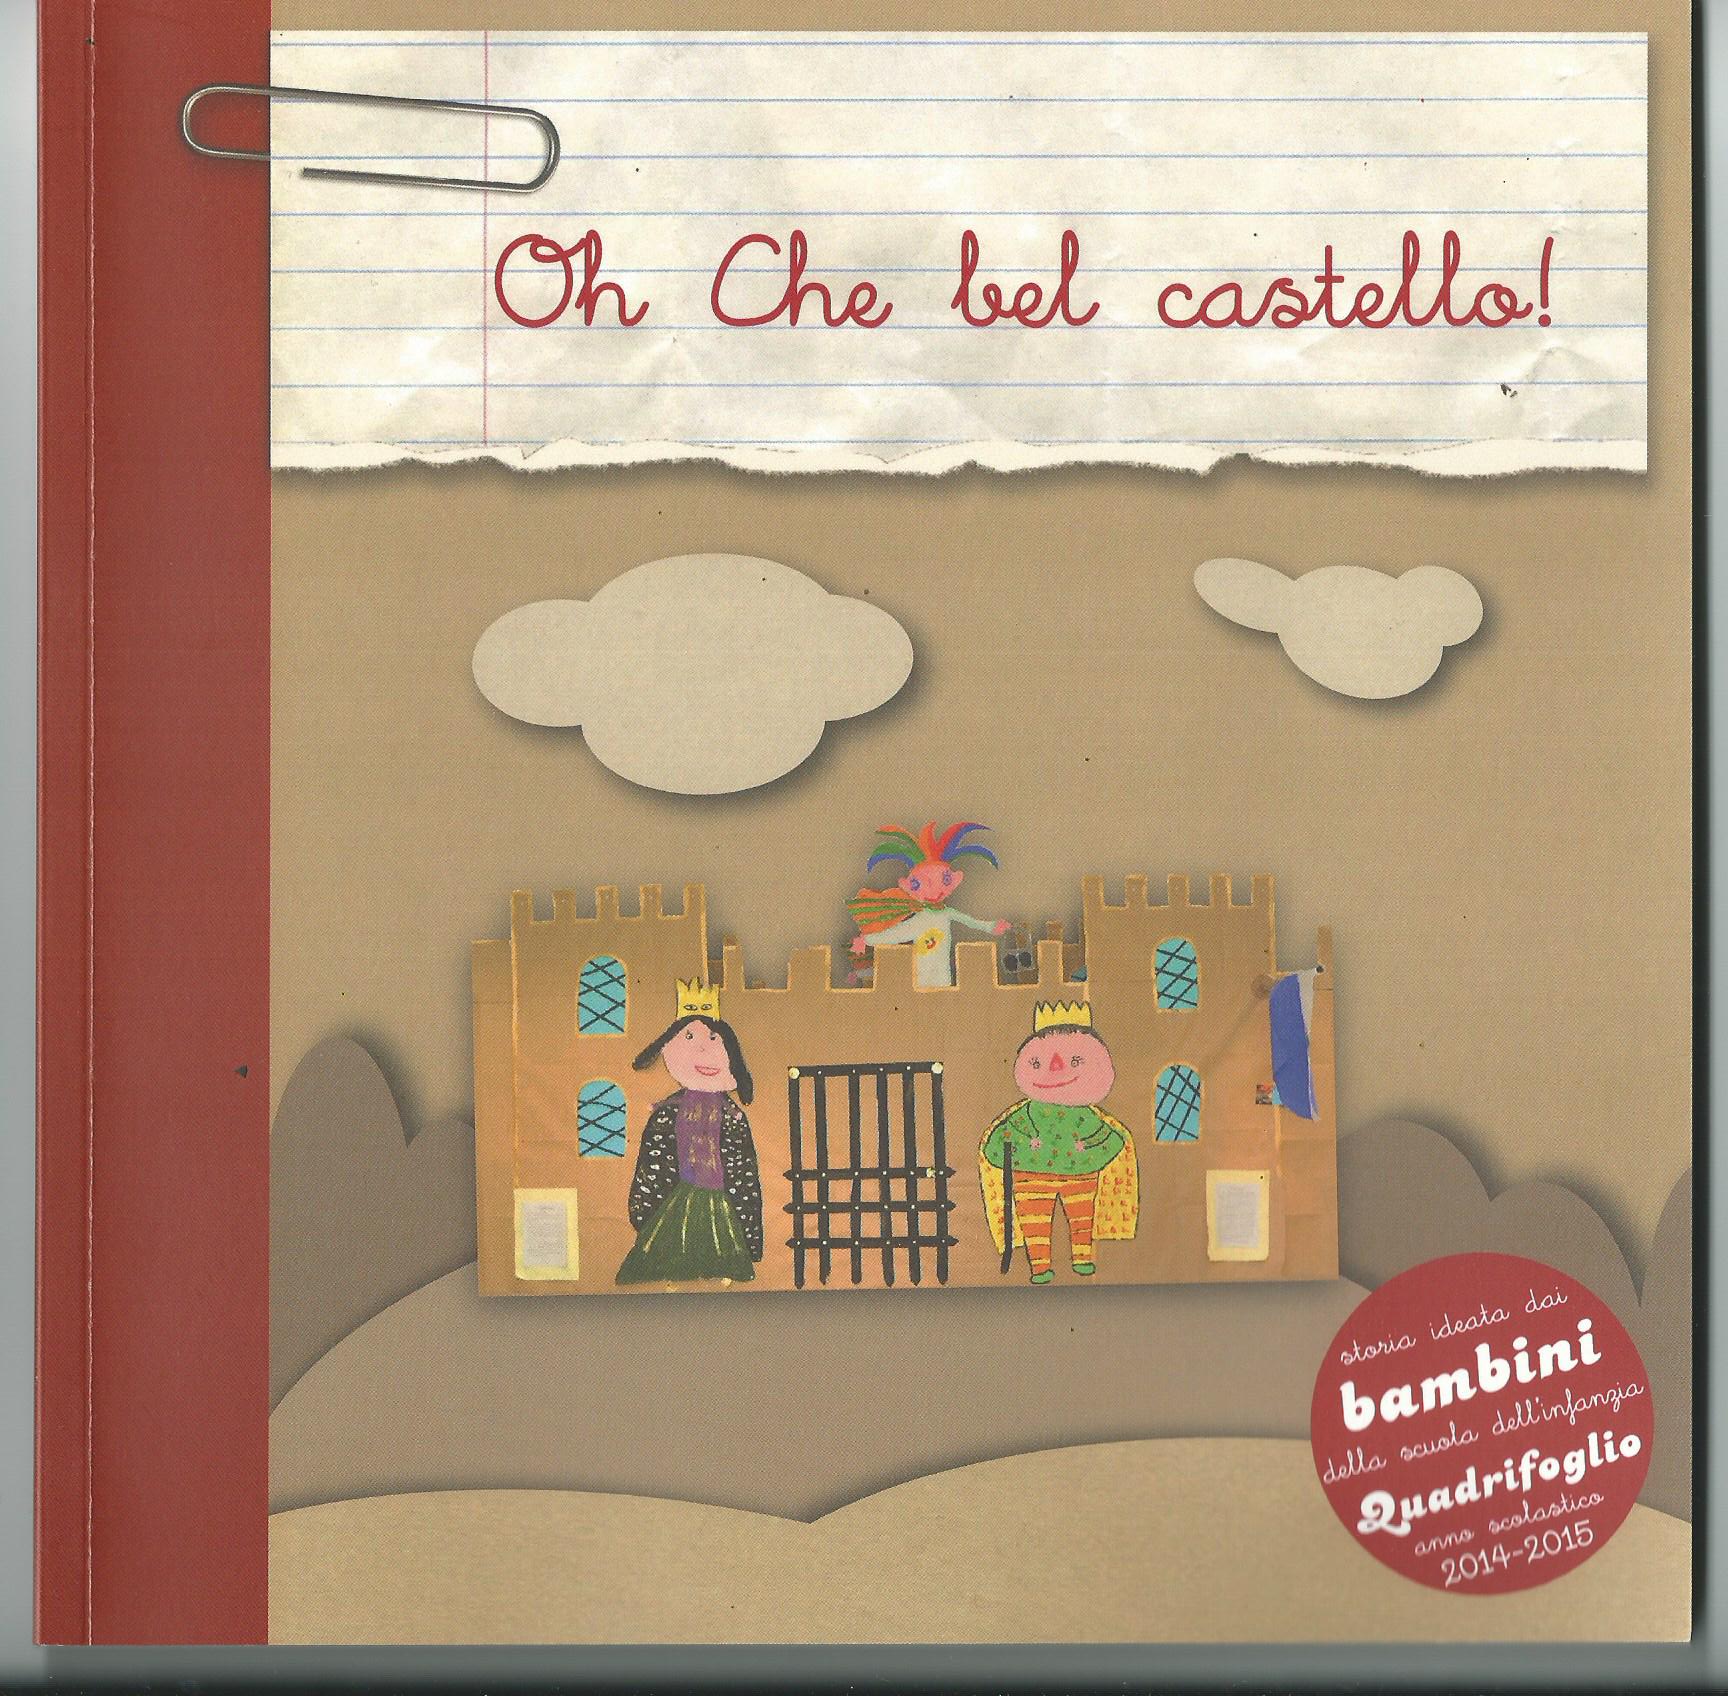 Si presenta il 17 il libro “OH CHE BEL CASTELLO”, ideato dai bimbi della  scuola Quadrifoglio - Occhio alla Notizia